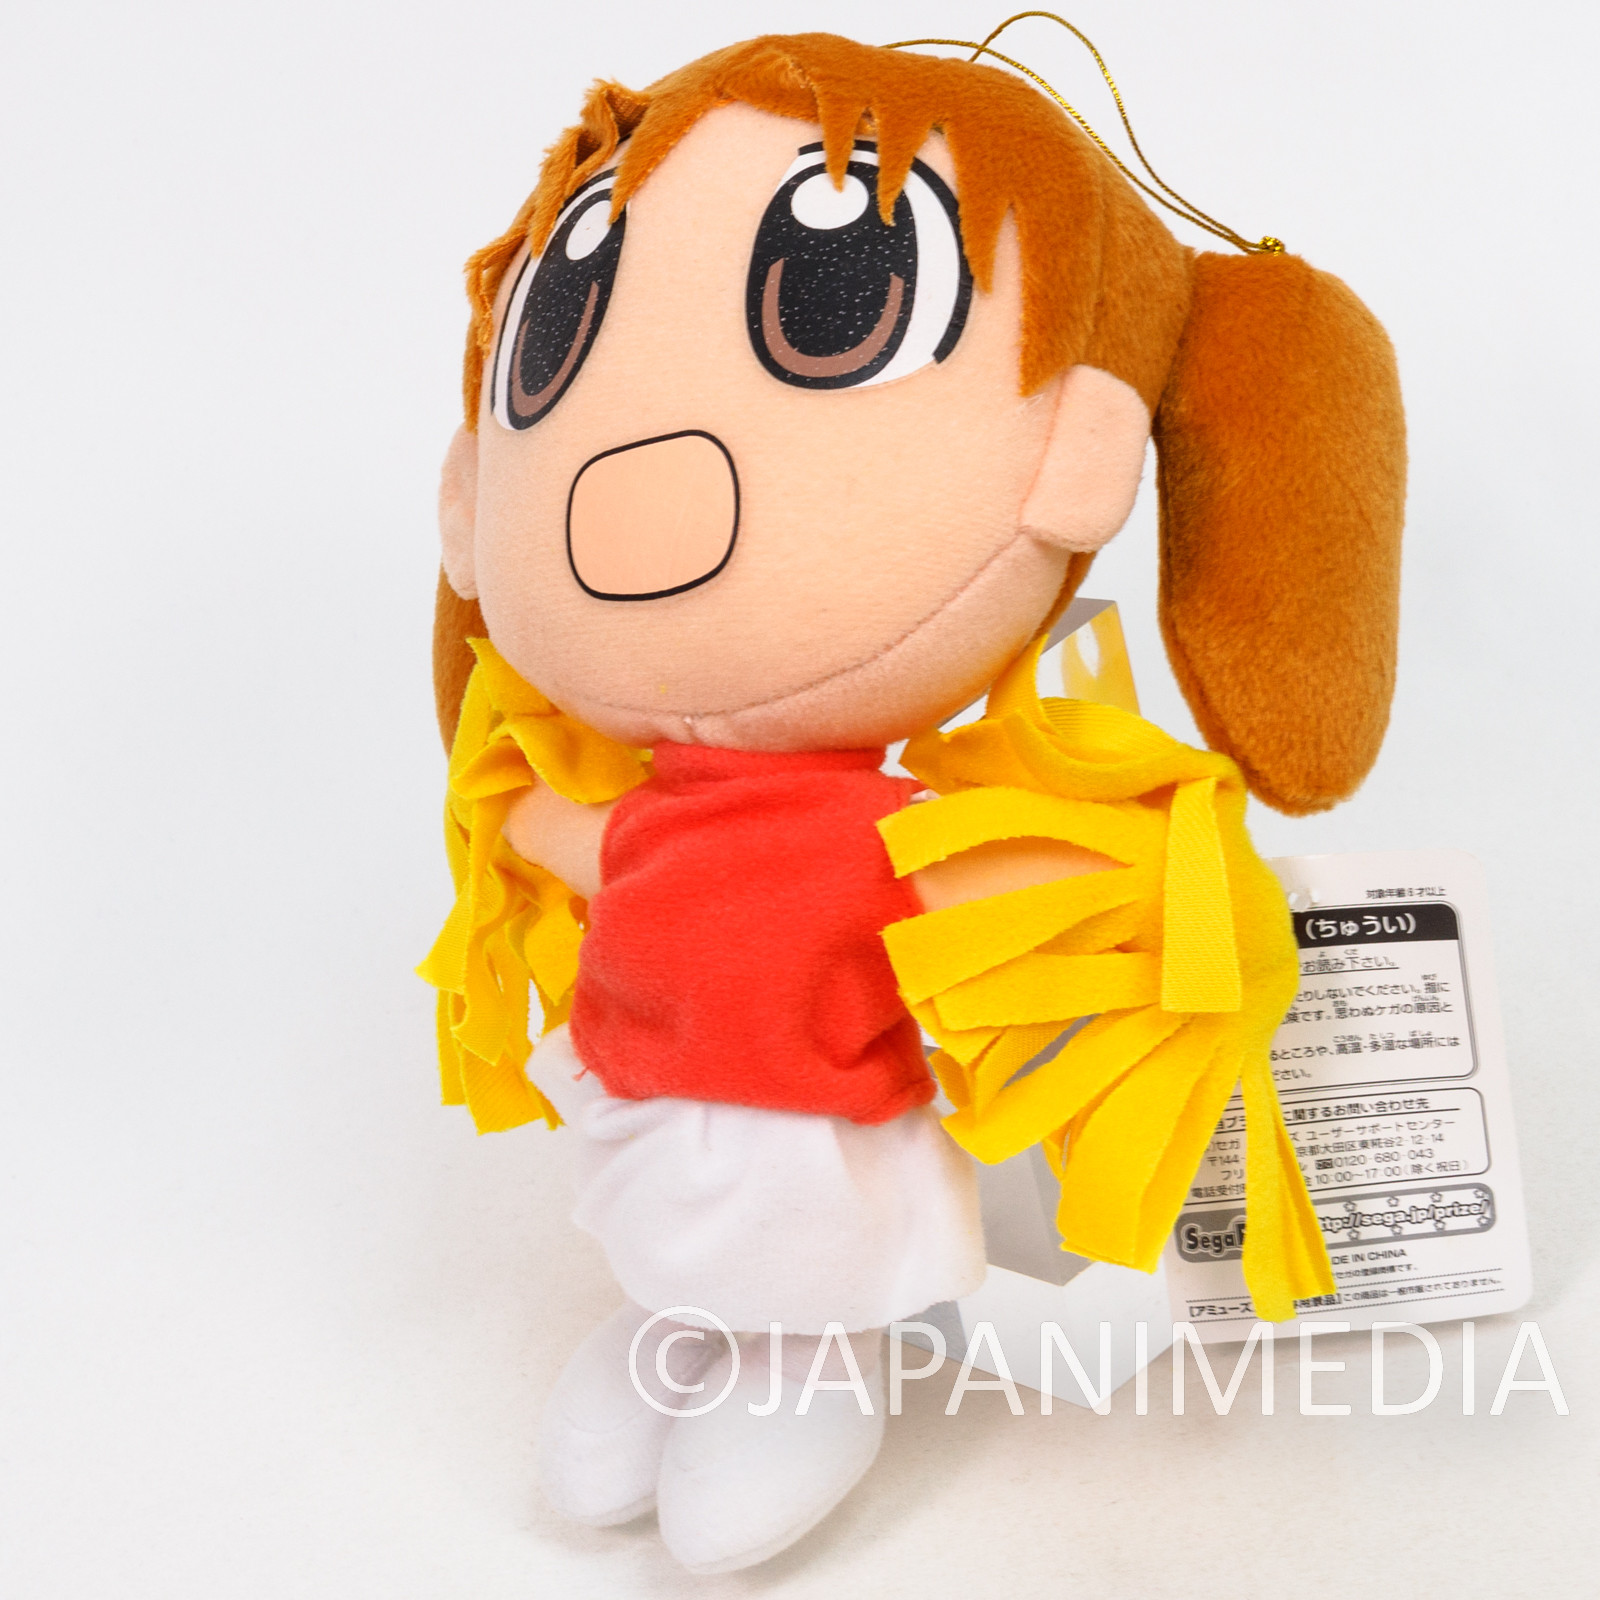 Azumanga Daioh Chiyo Cheerleader 8" Plush Doll SEGA KIYOHIKO AZUMA